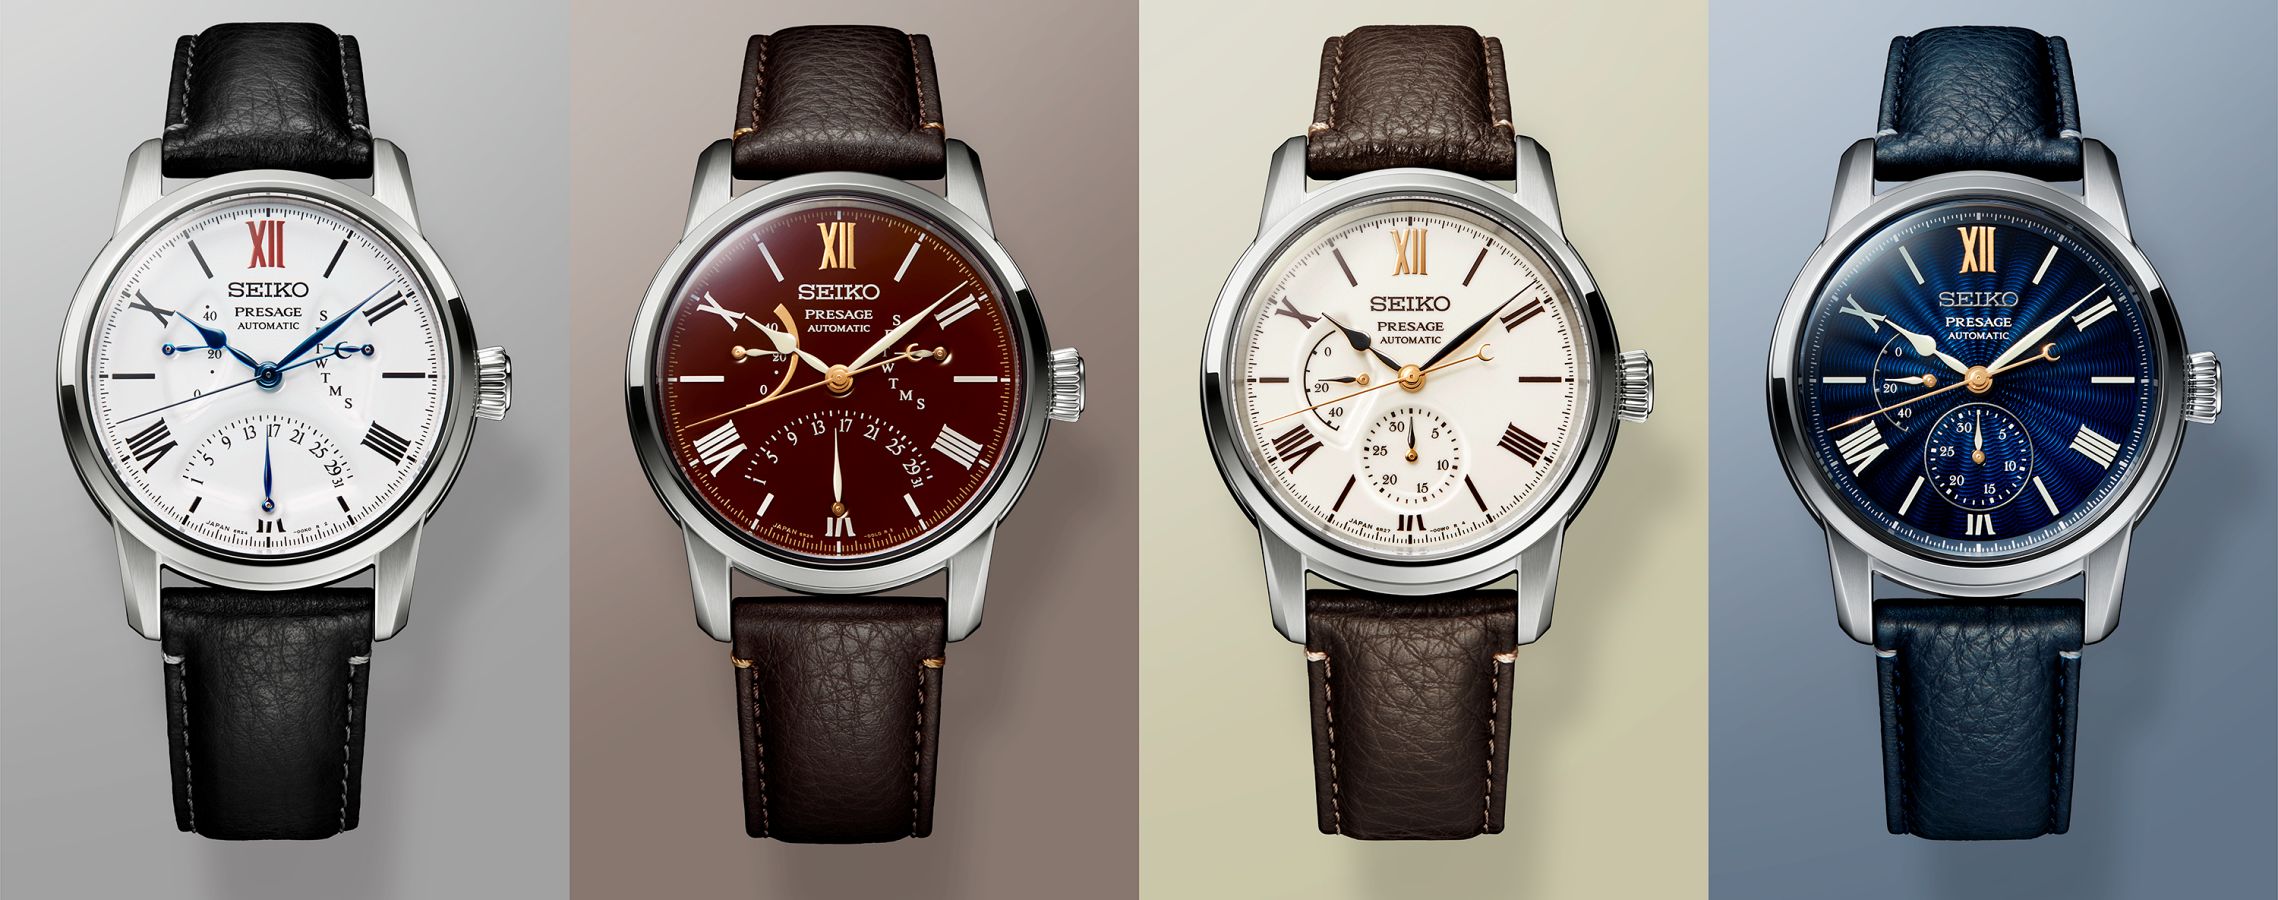 Seiko Presage Craftsmanship Series Limited Edition. Cztery zegarki, cztery różne techniki rzemieślnicze